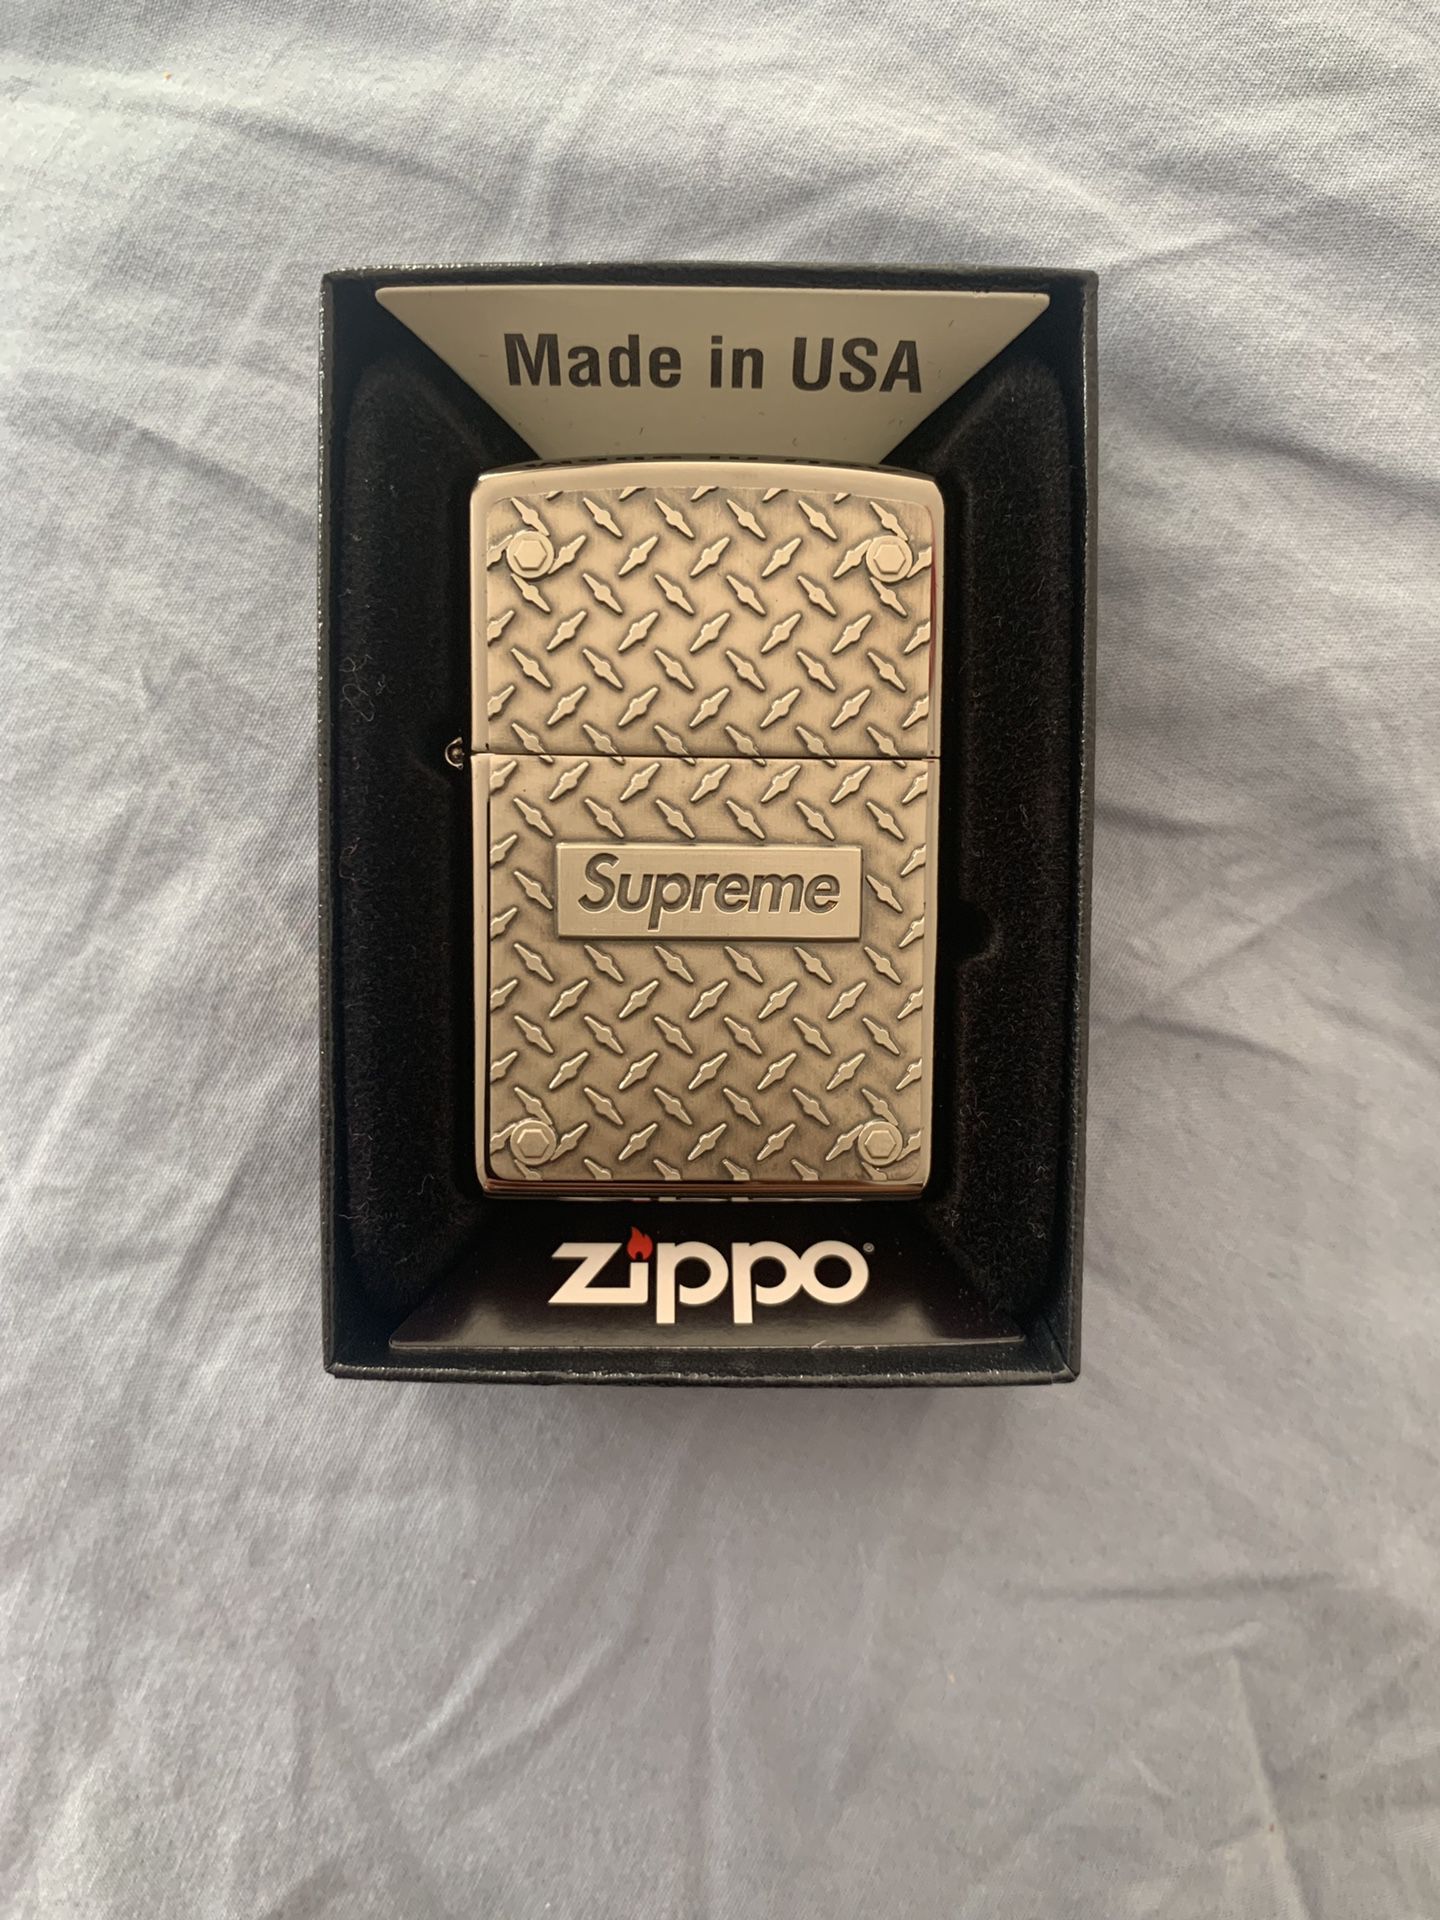 Supreme diamond plate zippo